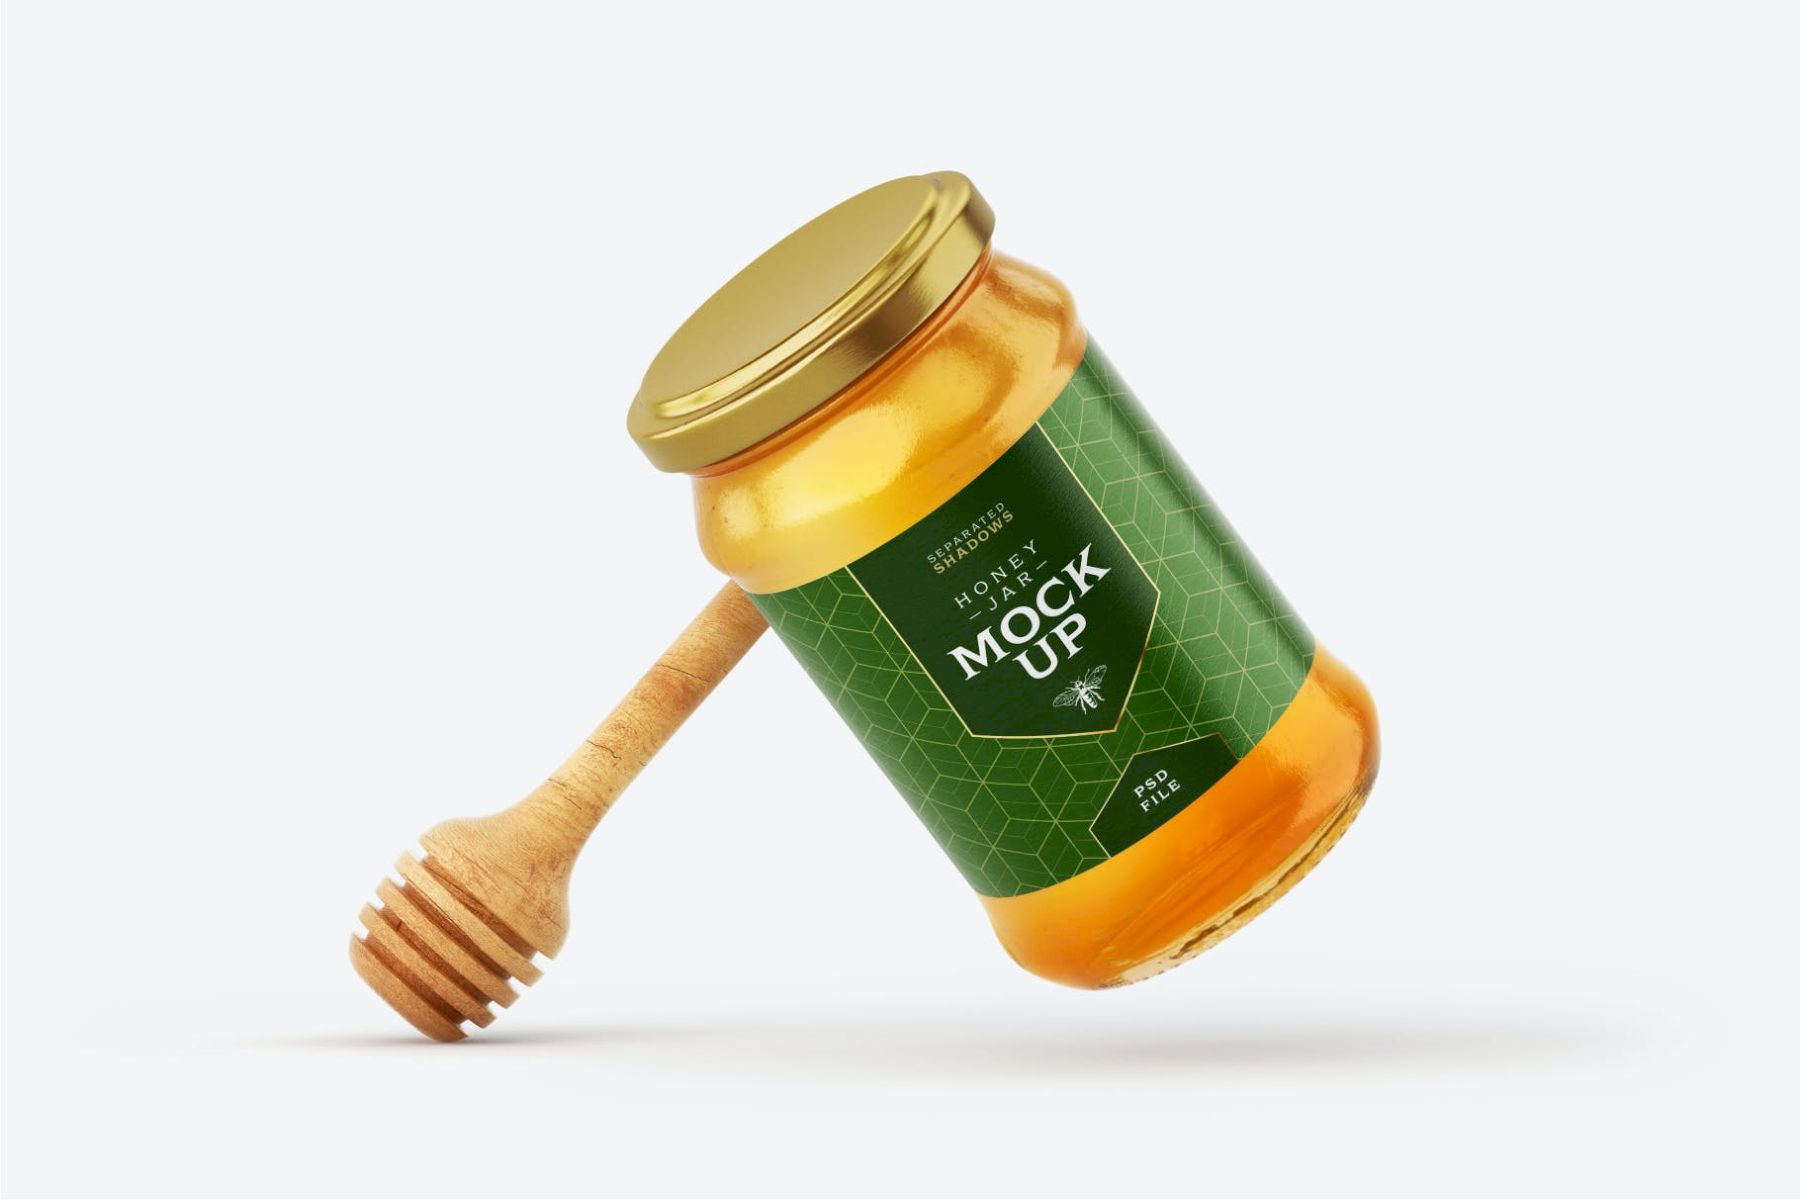 带北斗的蜂蜜罐样机套装 Honey Jar Mockup Set With Dipper插图4